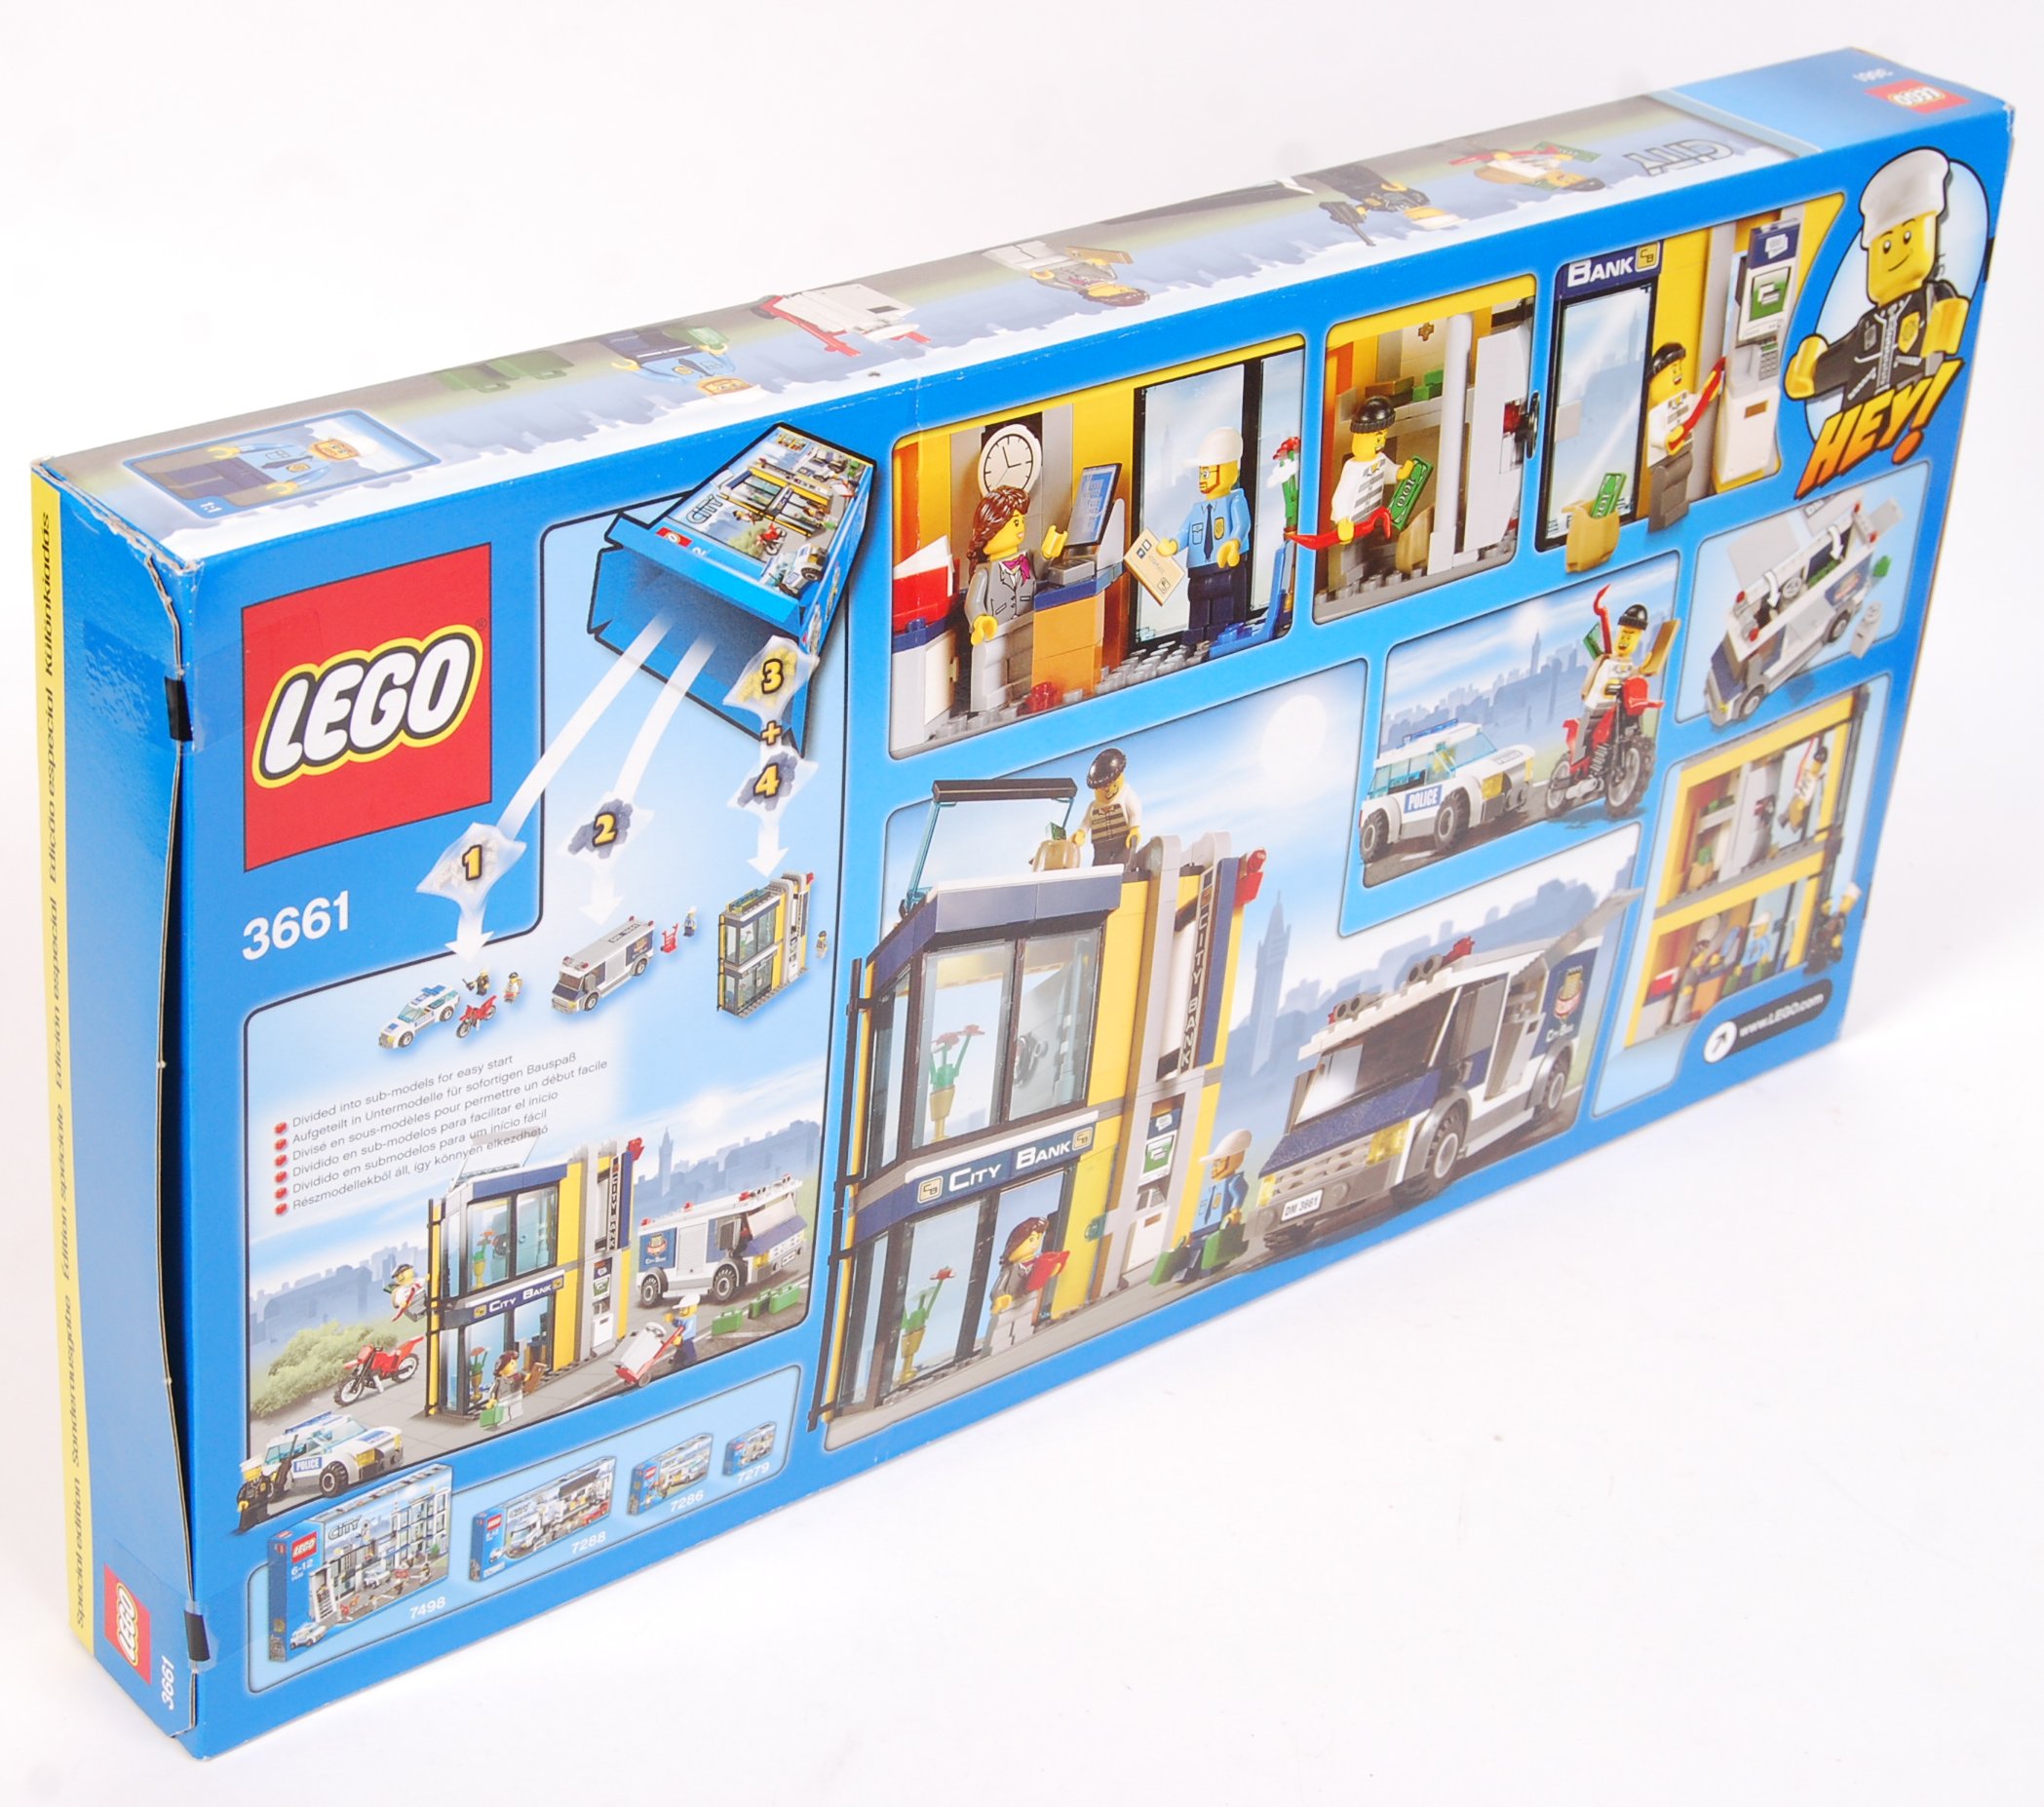 LEGO CITY SET 3661 ' BANK & MONEY TRANSFER ' SEALED - Image 2 of 2